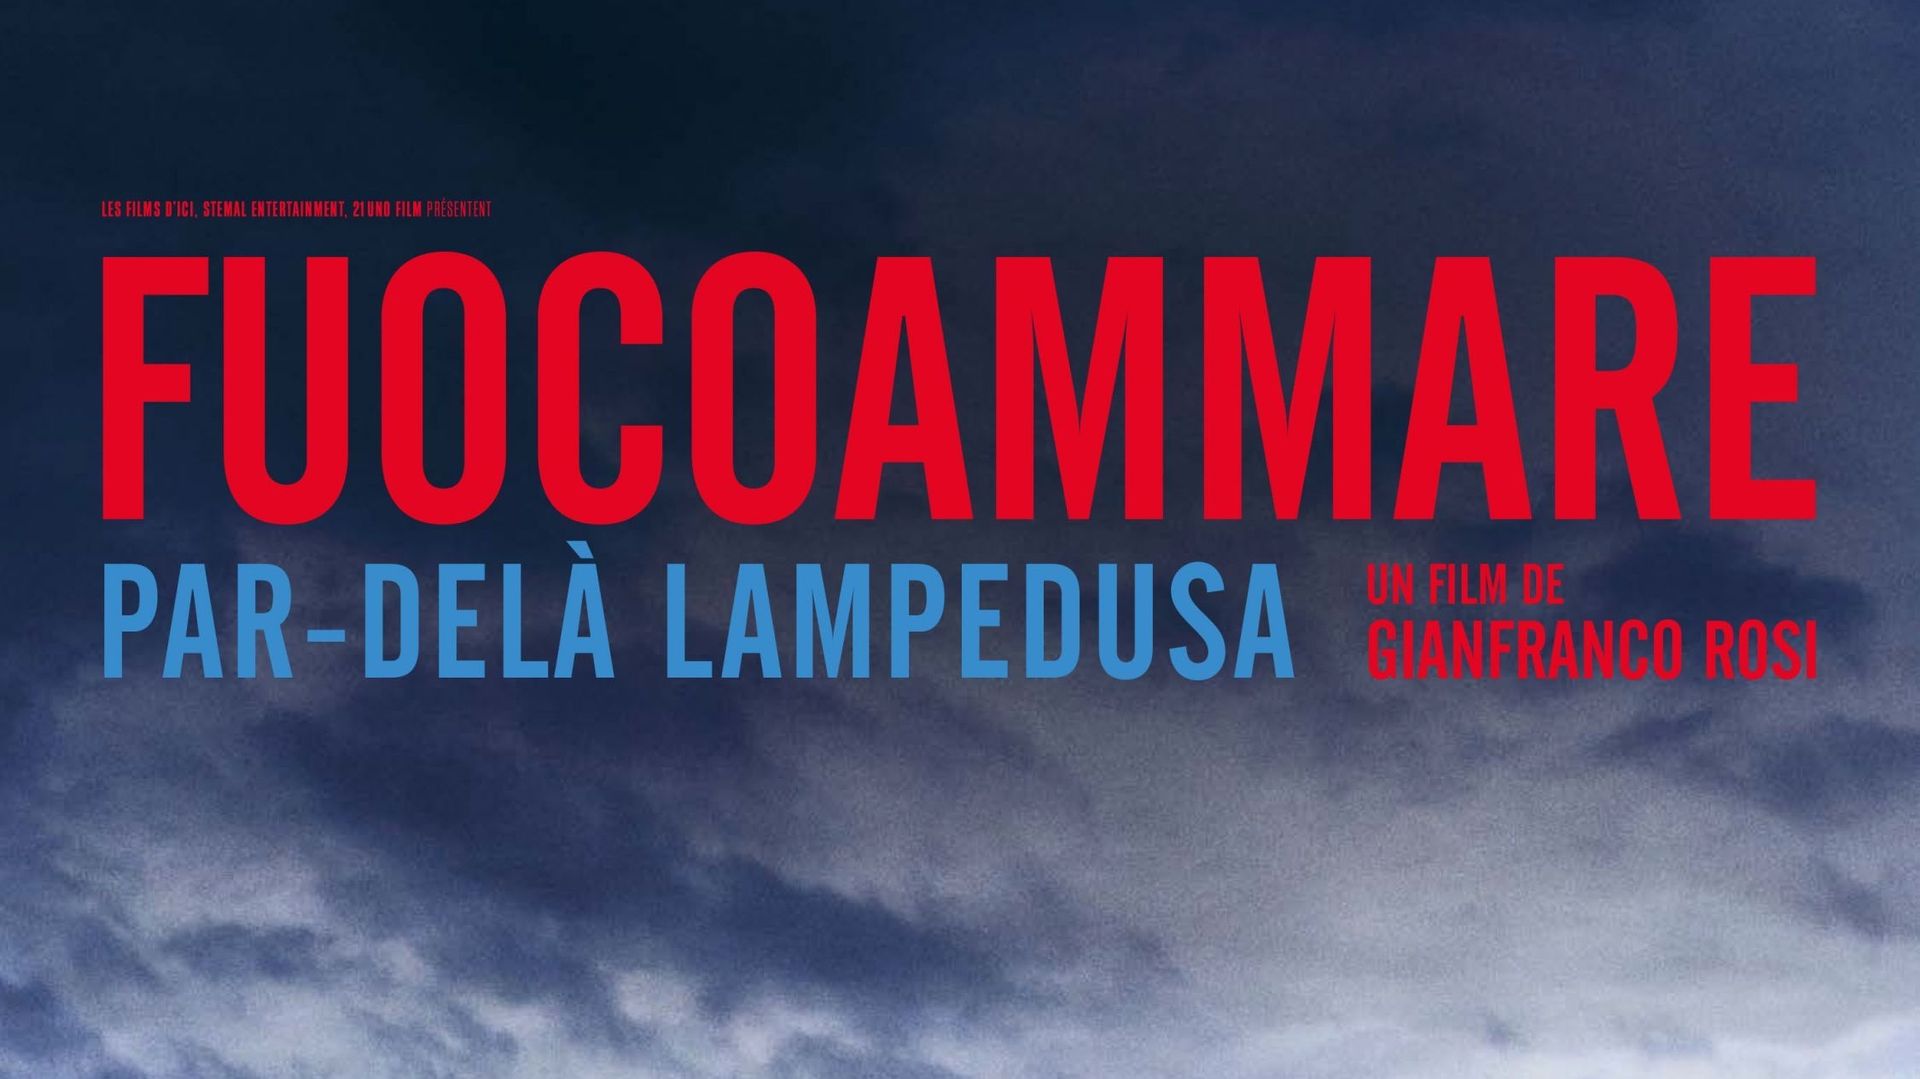 Le documentaire "Fuocoammare" sur les migrants à Lampedusa, candidat italien à l'Oscar